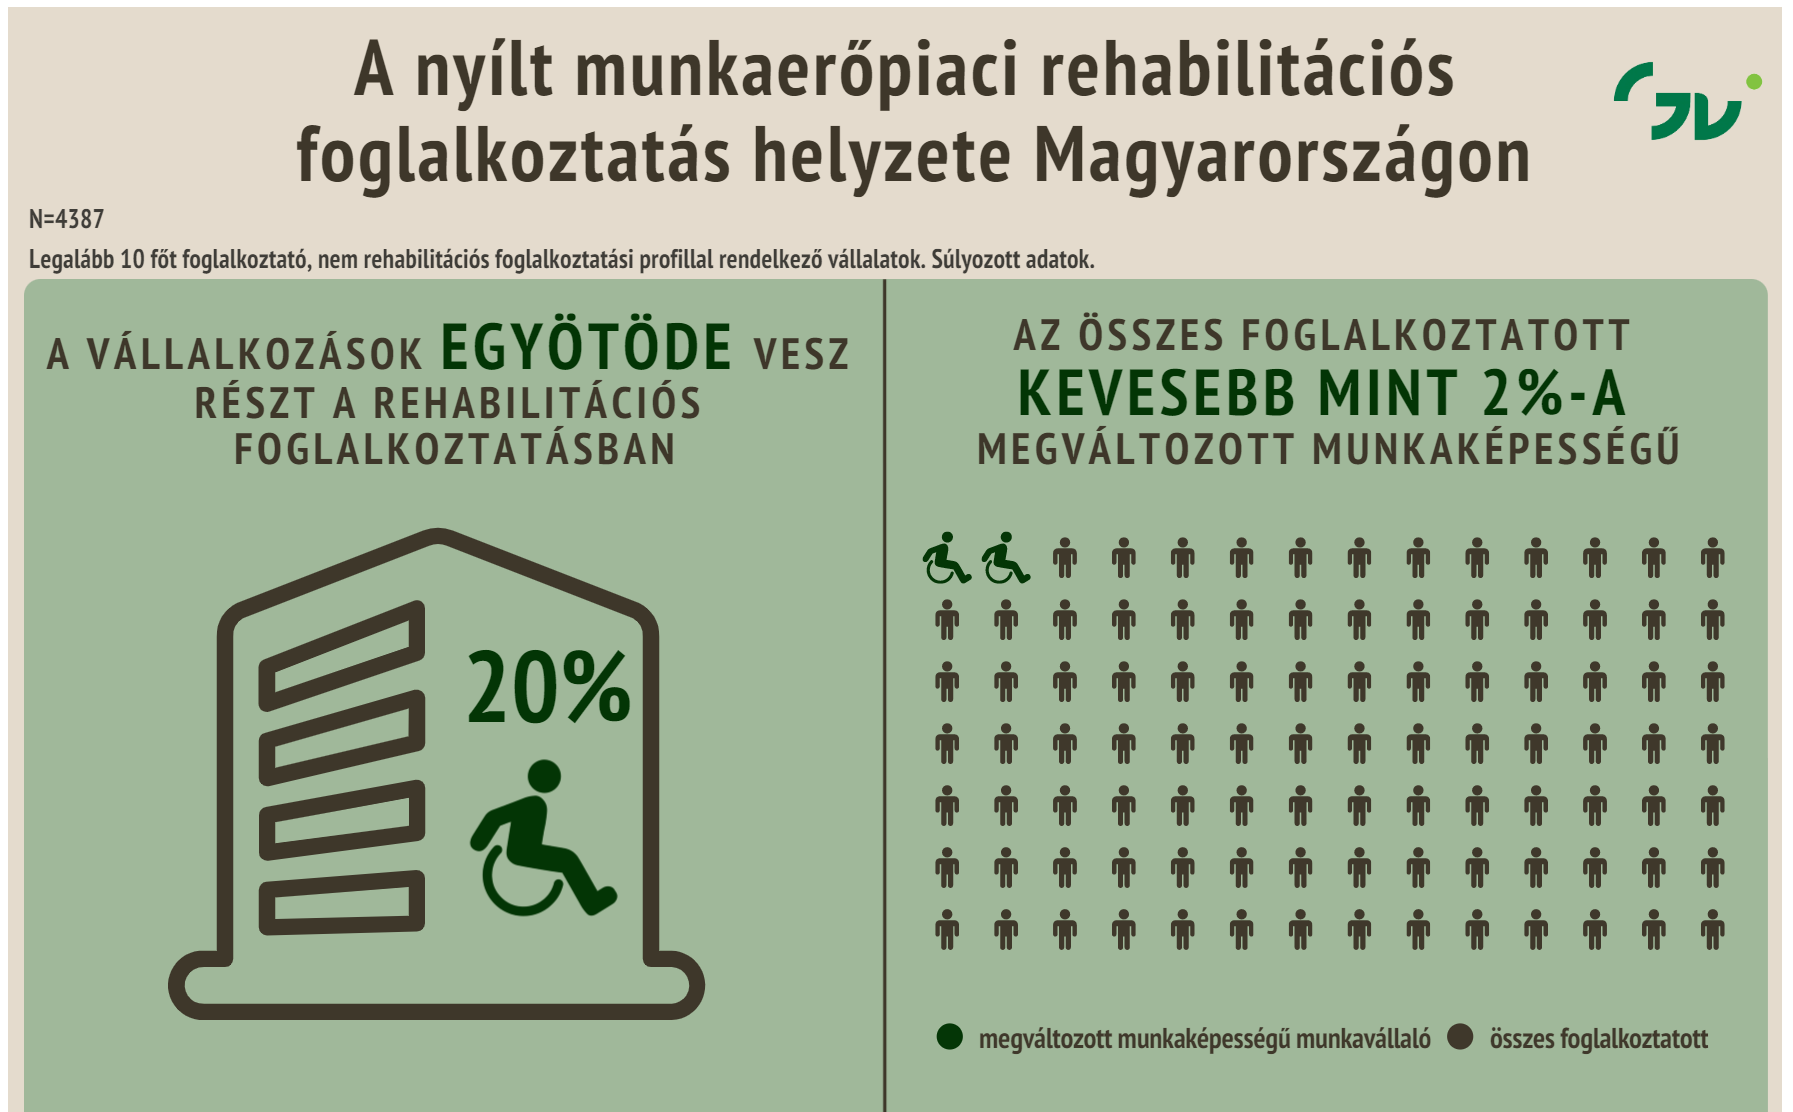 MKIK GVI kimutatása, hogy csak a vállalatok 20%-a vesz részt a rehabilitációs foglalkoztatásban, illetve 2% alatt van a foglalkoztatott MMK személyek száma a 10 fő feletti munkaadók esetében